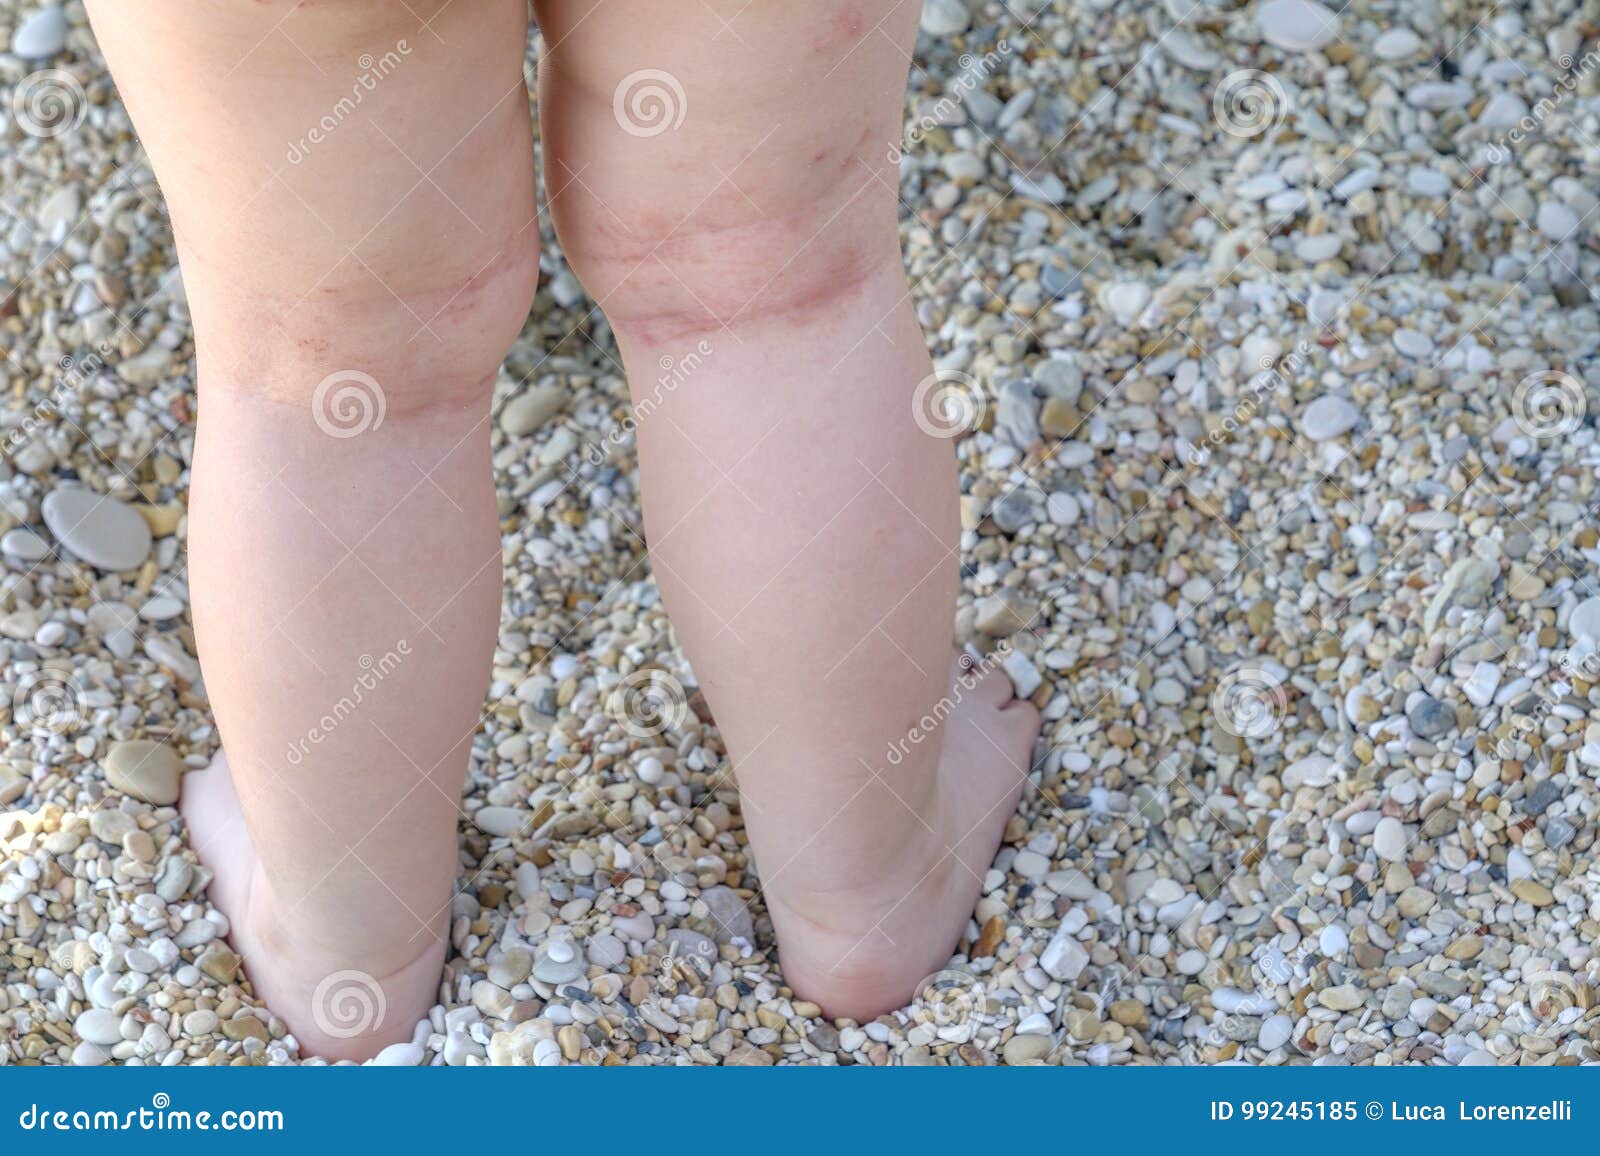 skin irritation newborn atopic dermatitis legs